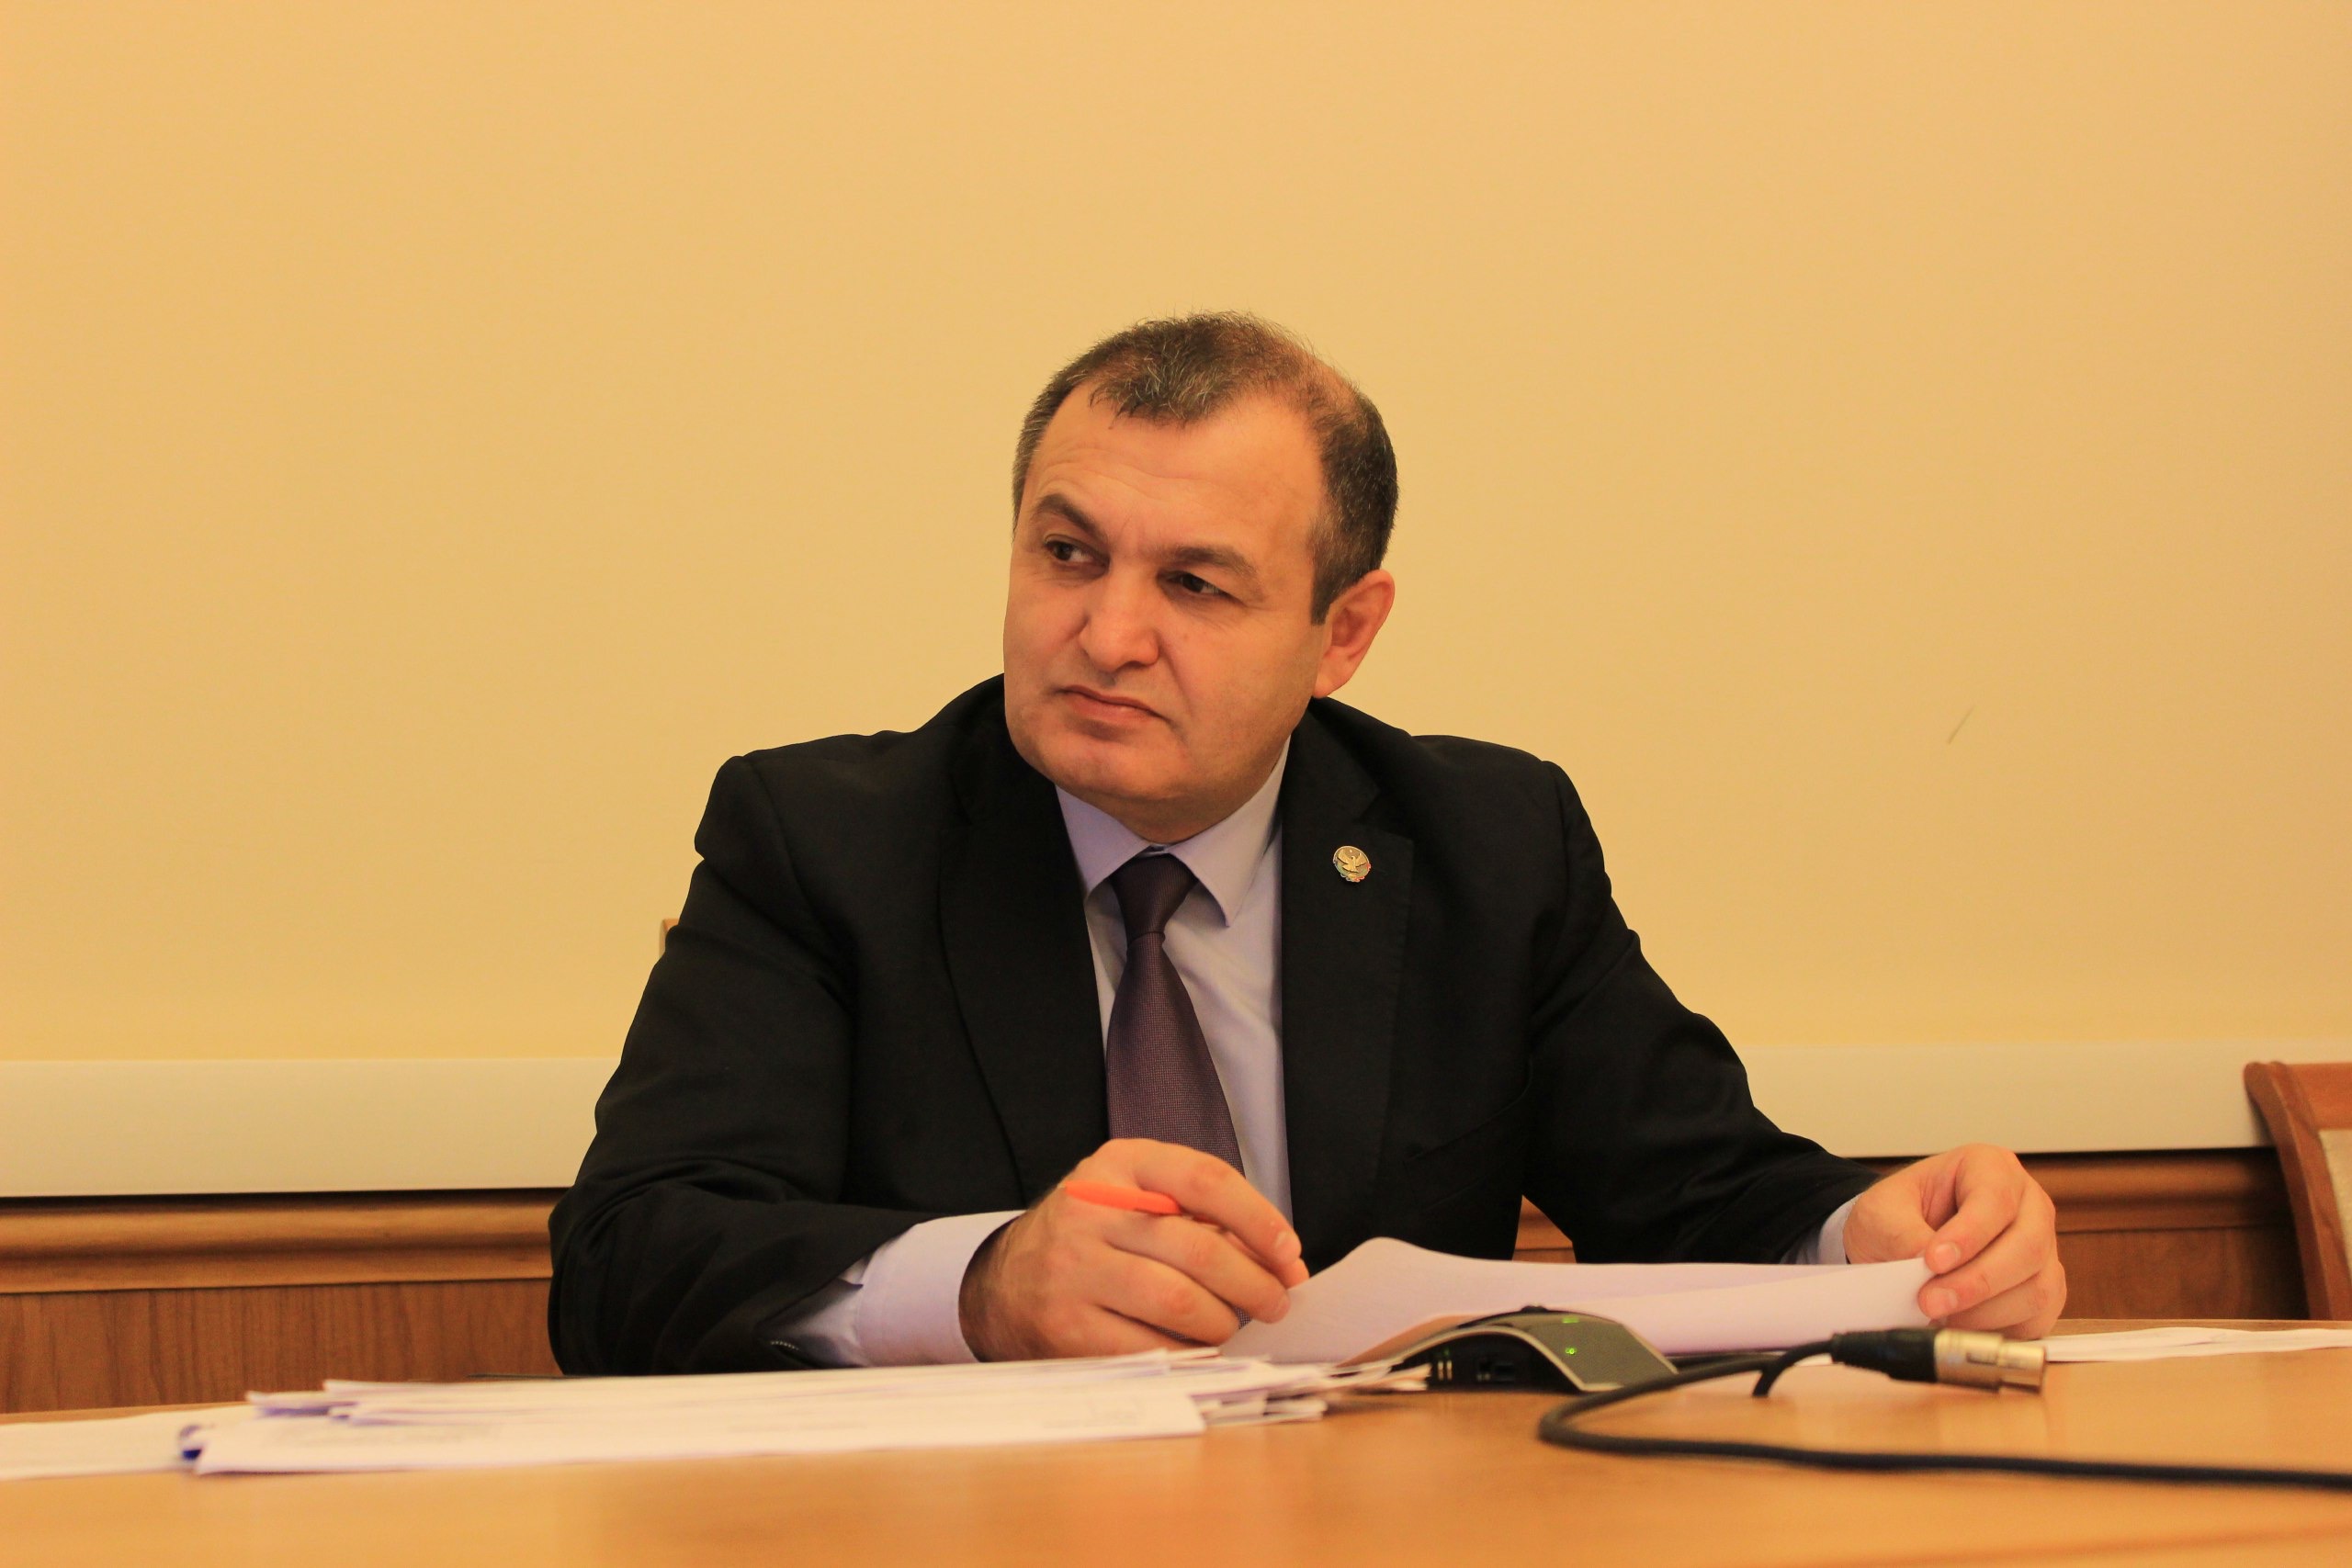 Агарагим Кагиргаджиев обсудил меры имущественной поддержки субъектов малого и среднего предпринимательства с представителями муниципальных образований